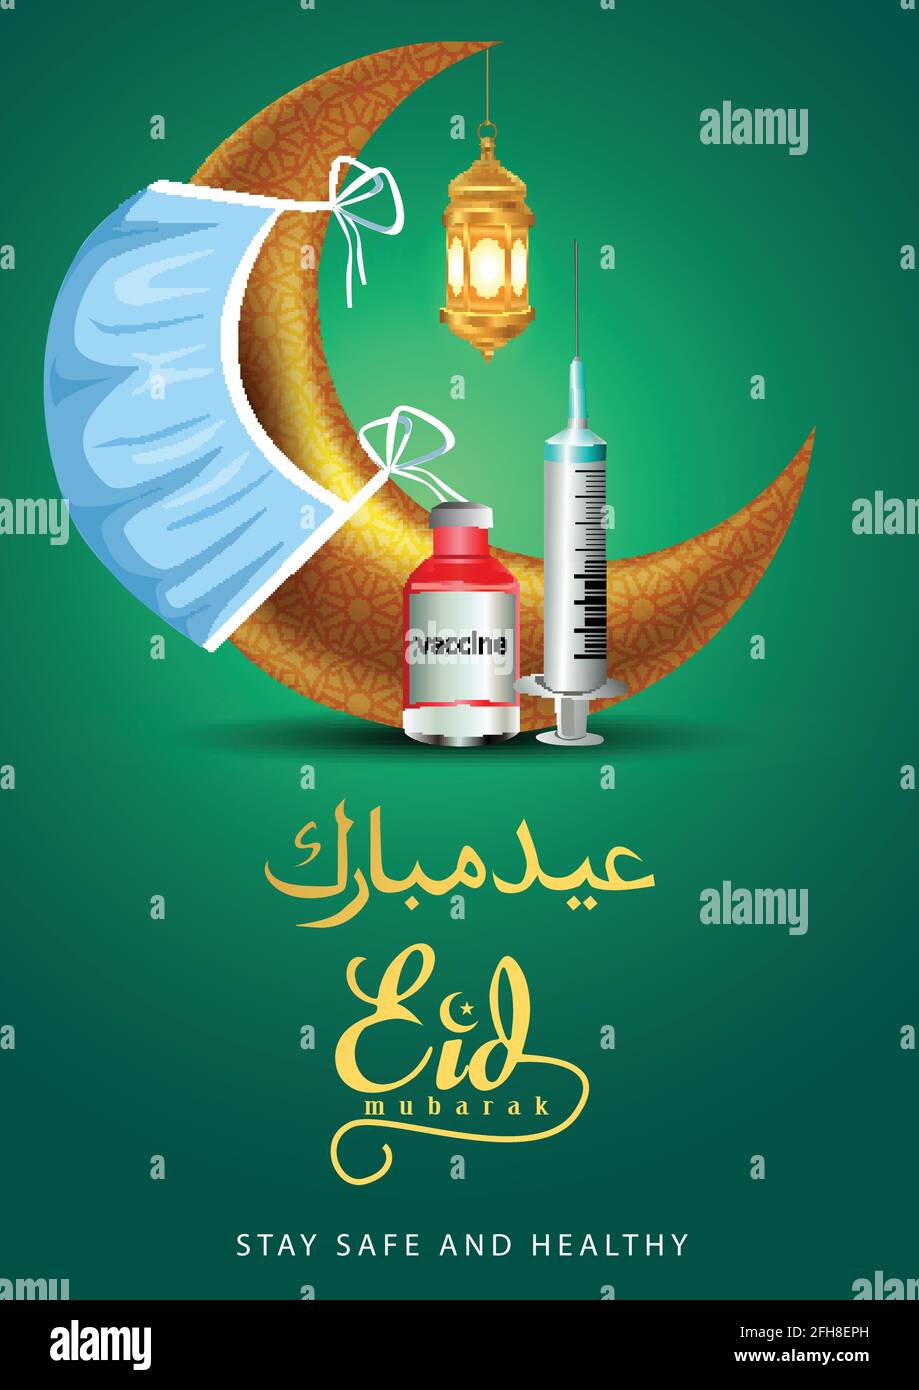 crescent, Maske, Schutz Corona oder Covid-19 Virus Konzept für das muslimische Fest des heiligen Monats Ramadan Kareem oder Eid Mubarak Design Hintergrund. Stock Vektor